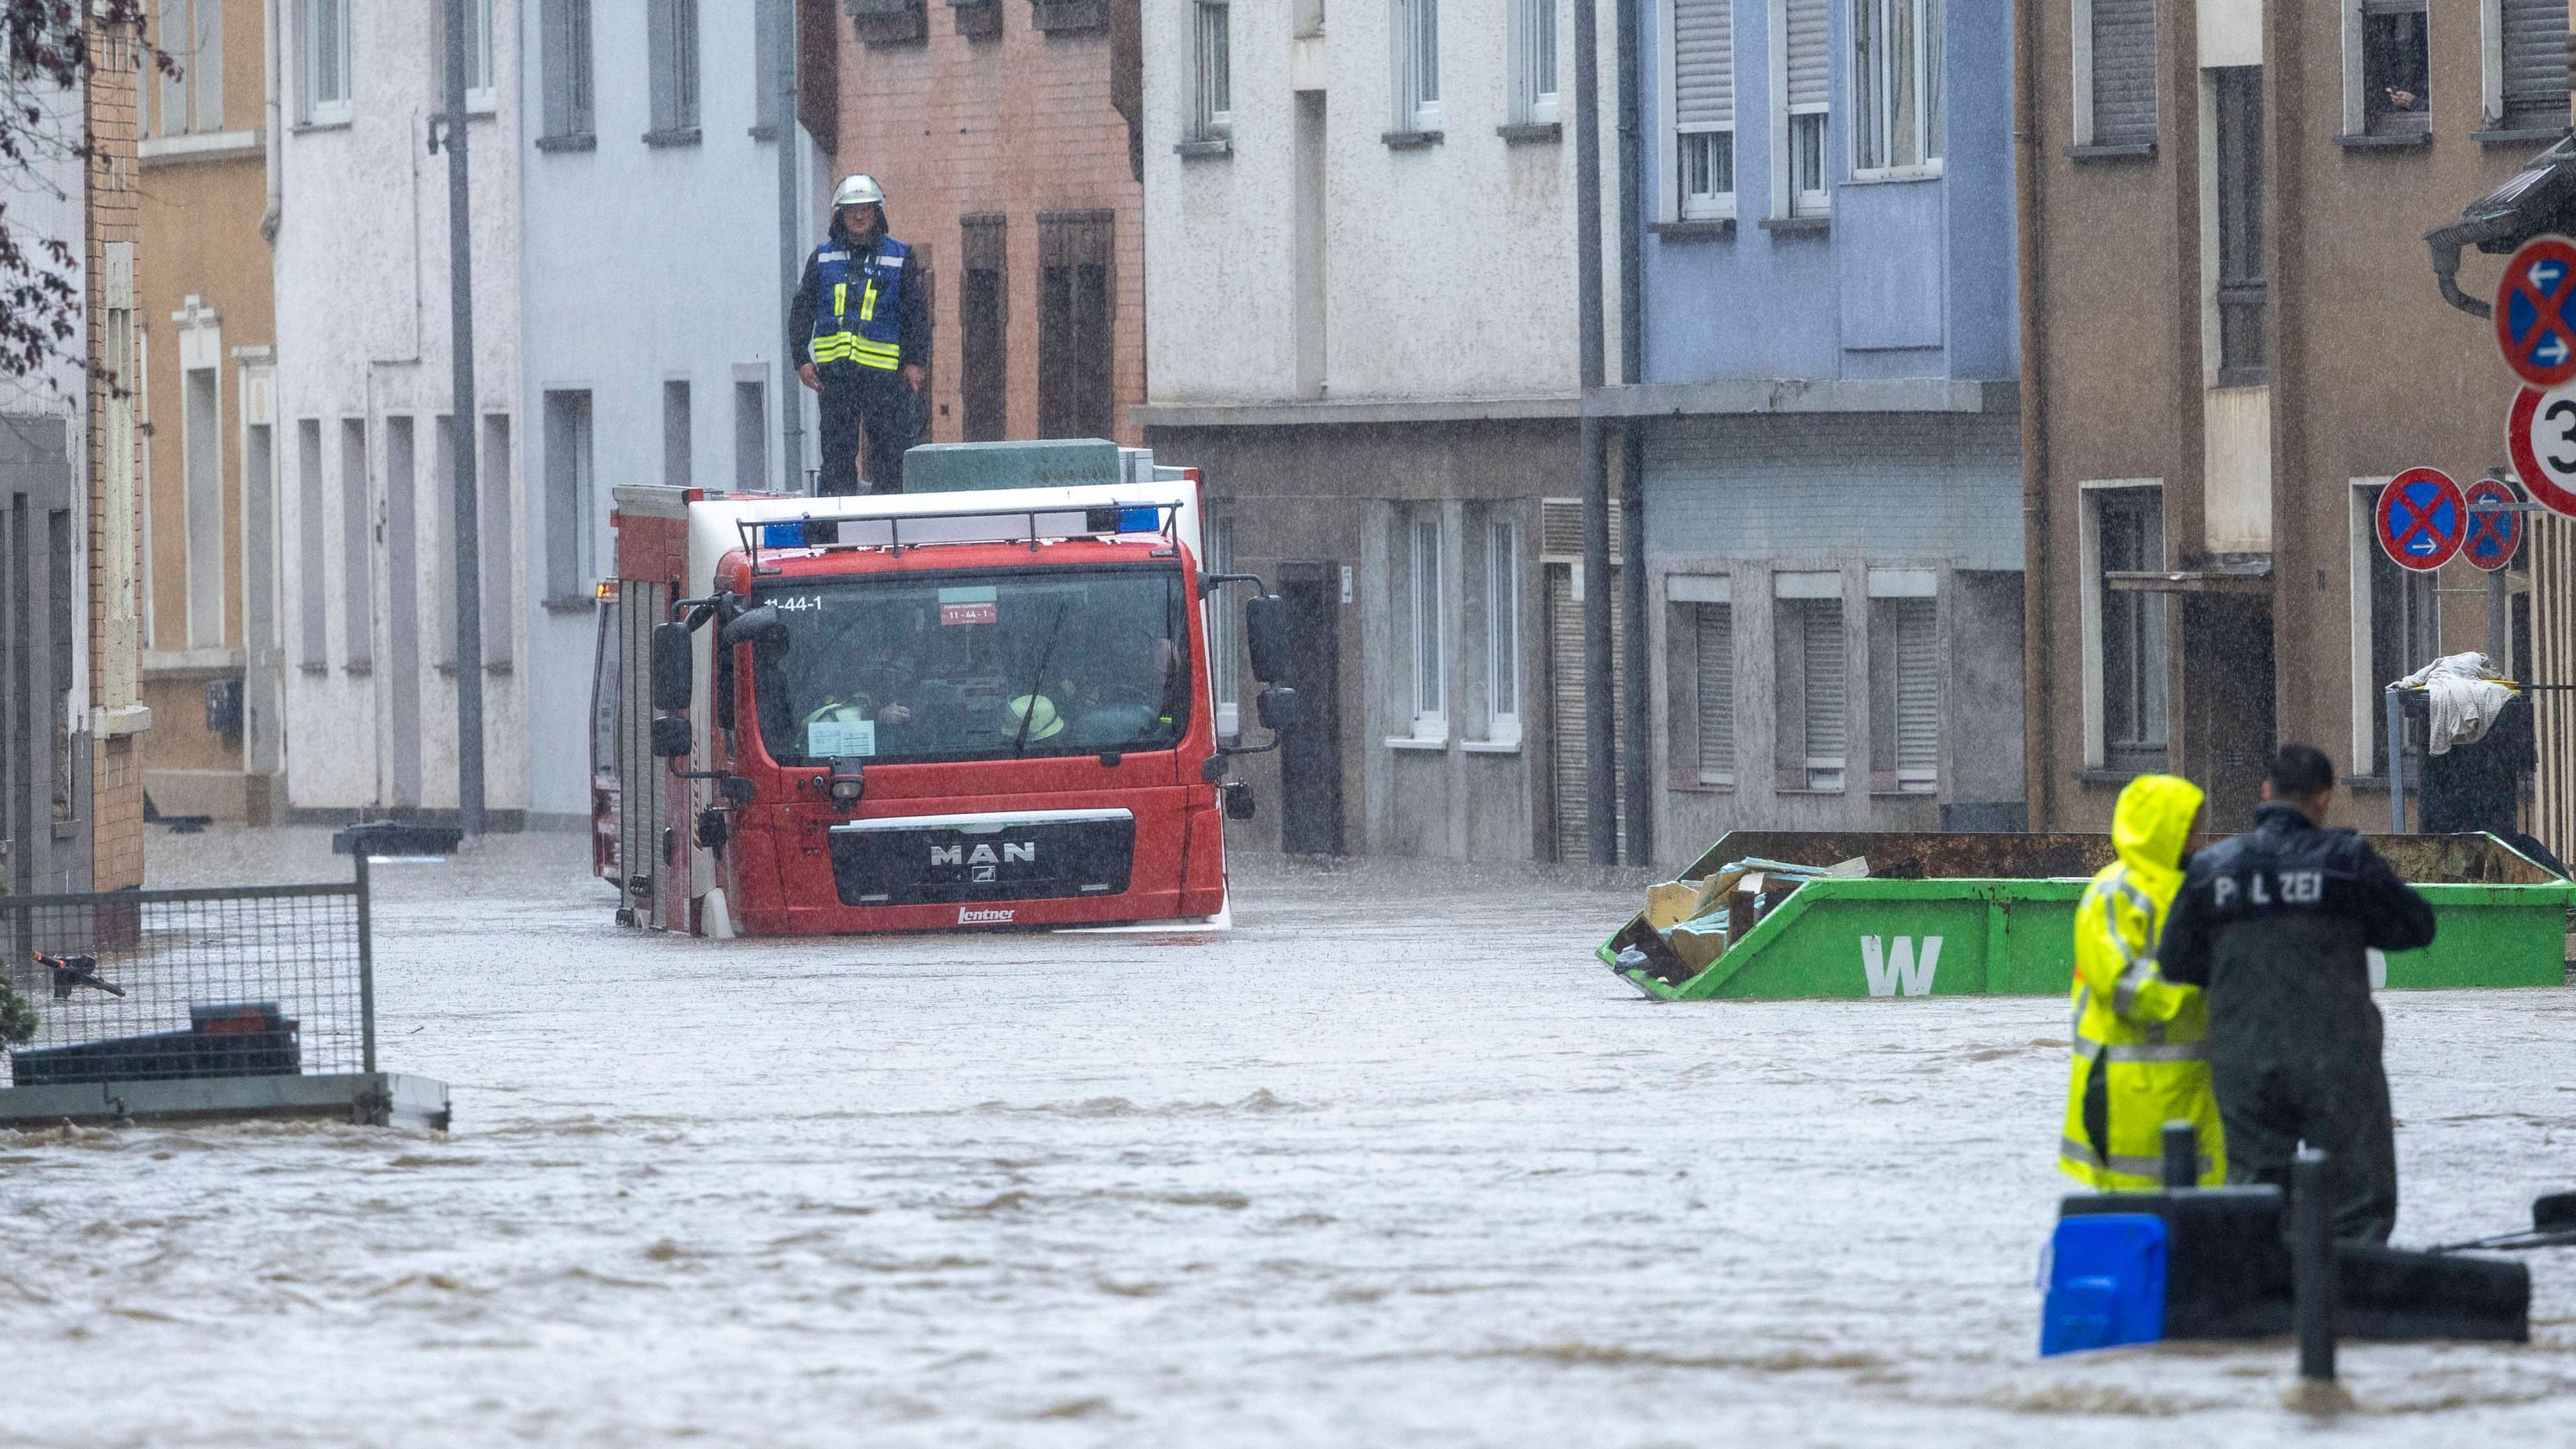 Hochwasser im Saarland: Olaf Scholz besucht Gebiet | Newsblog zum Unwetter